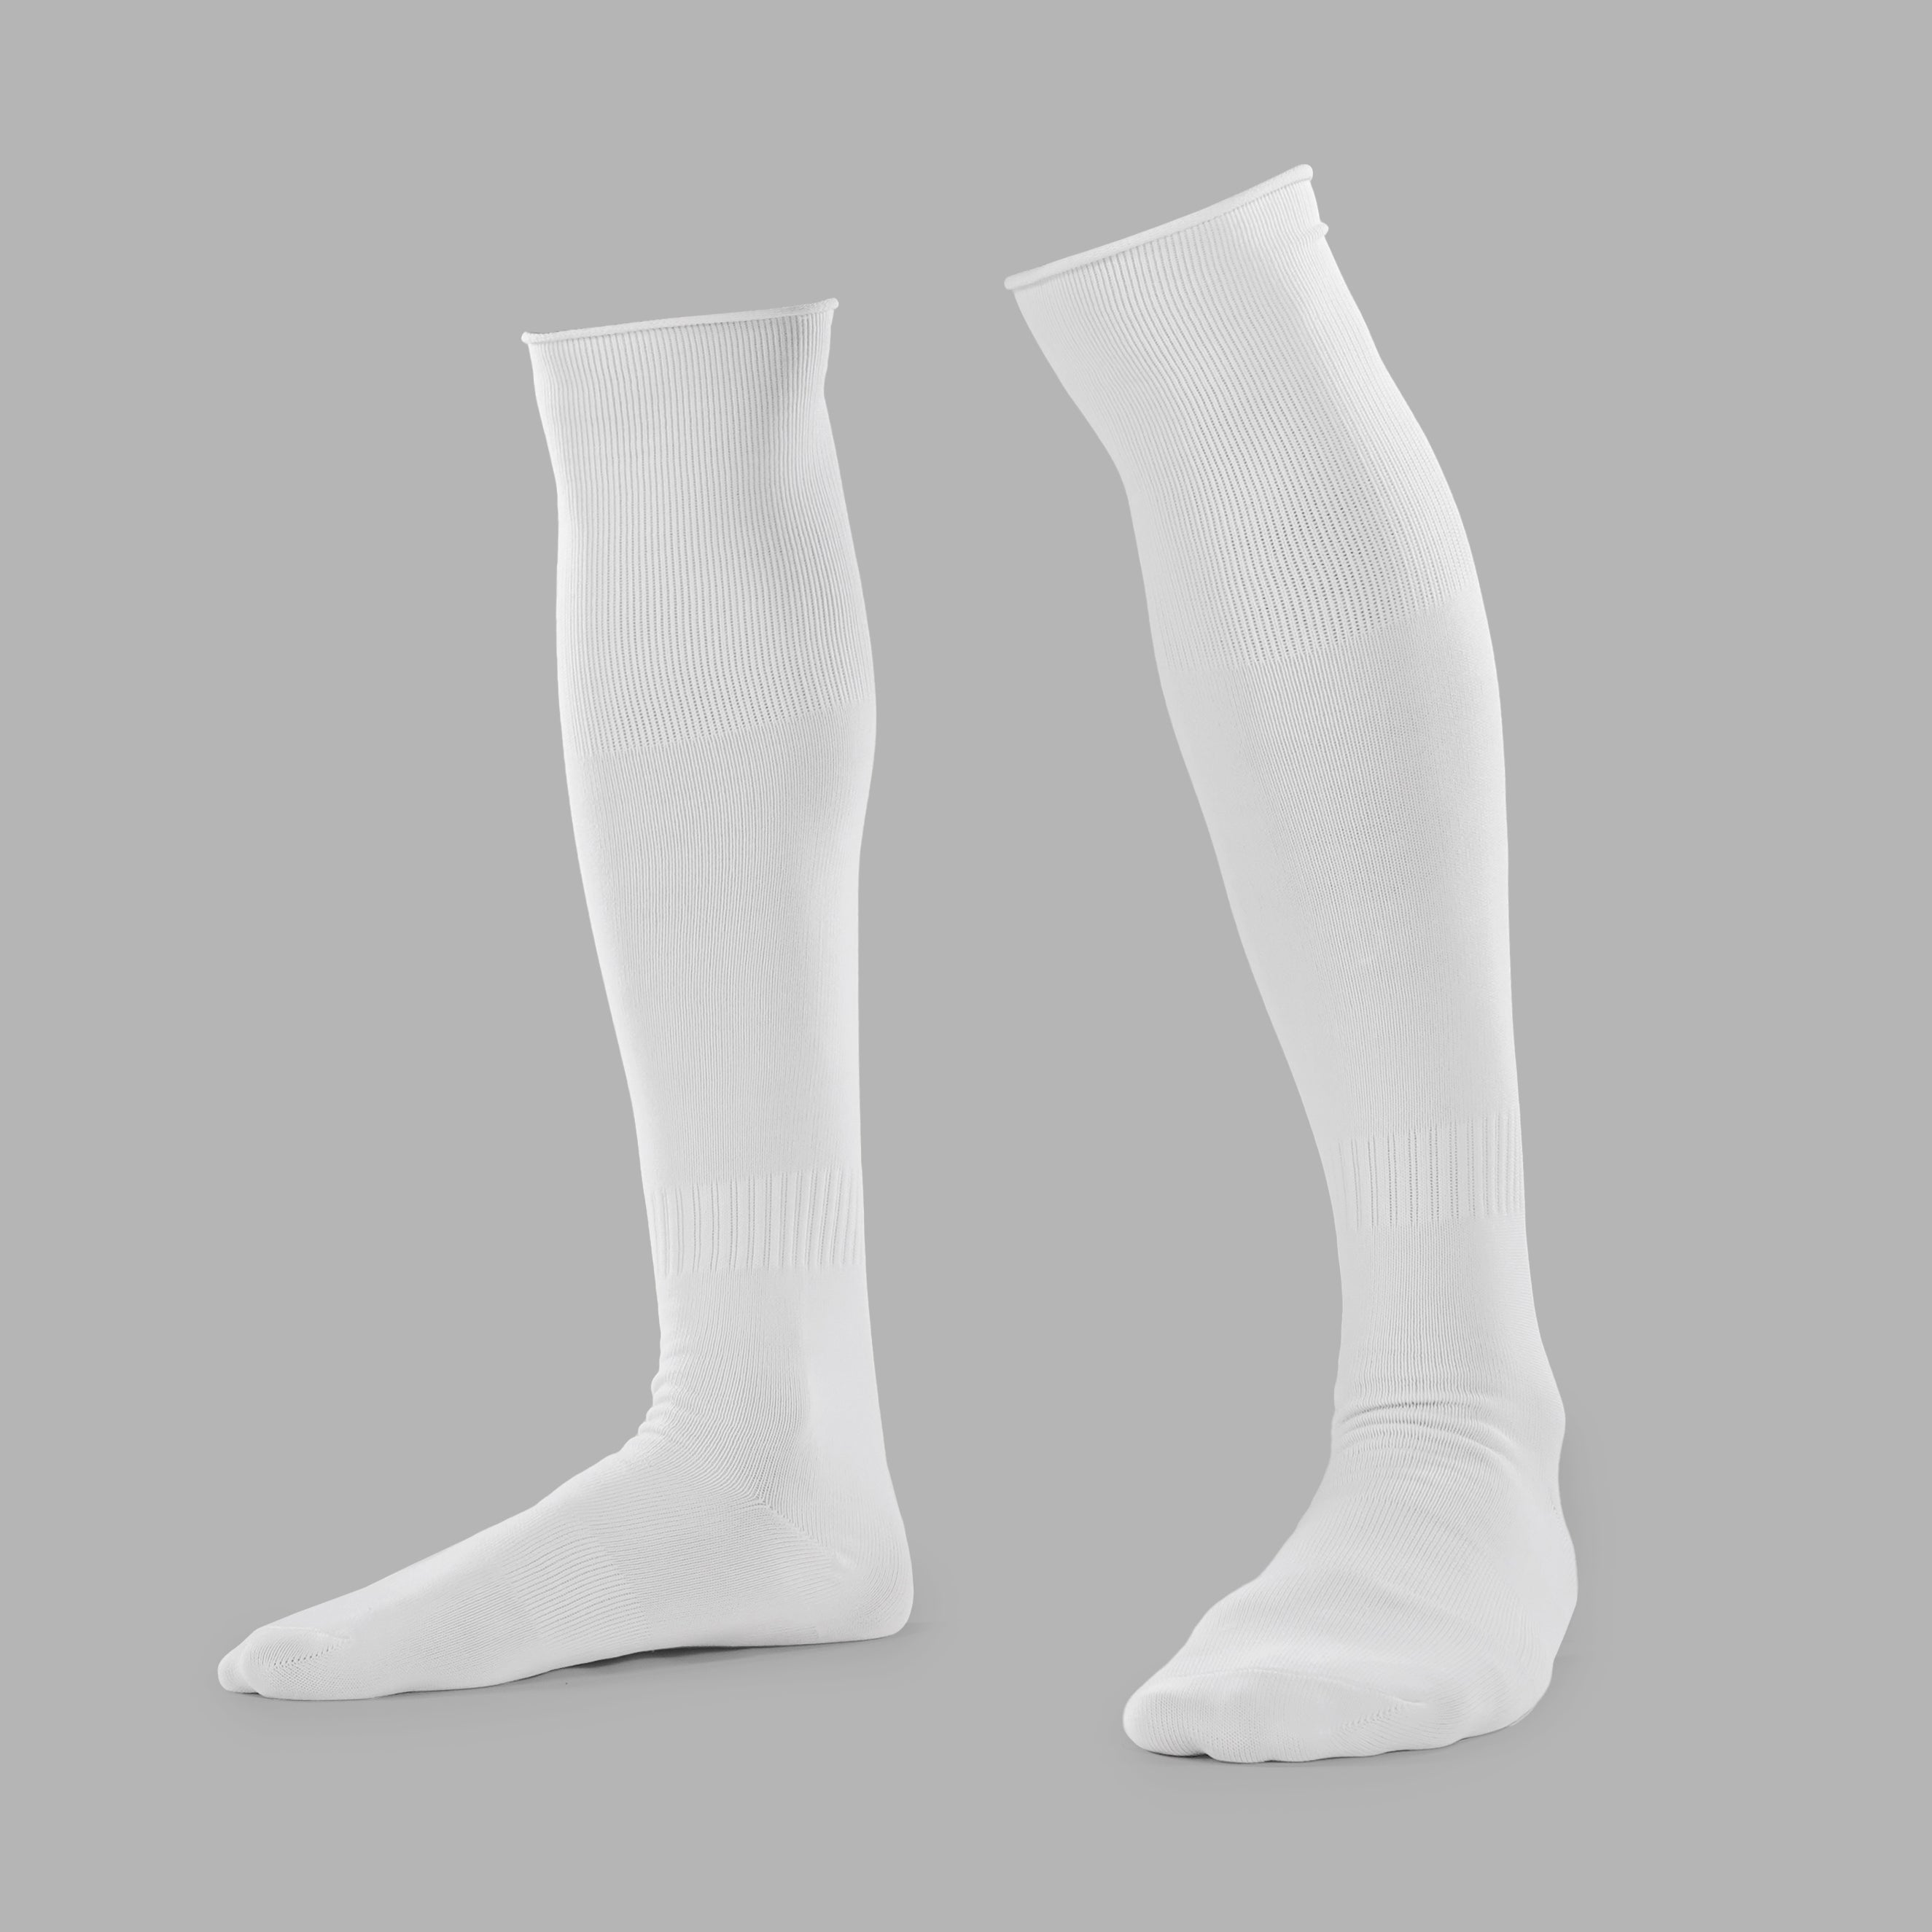 Over the Knee Socks, Long Sports Socks